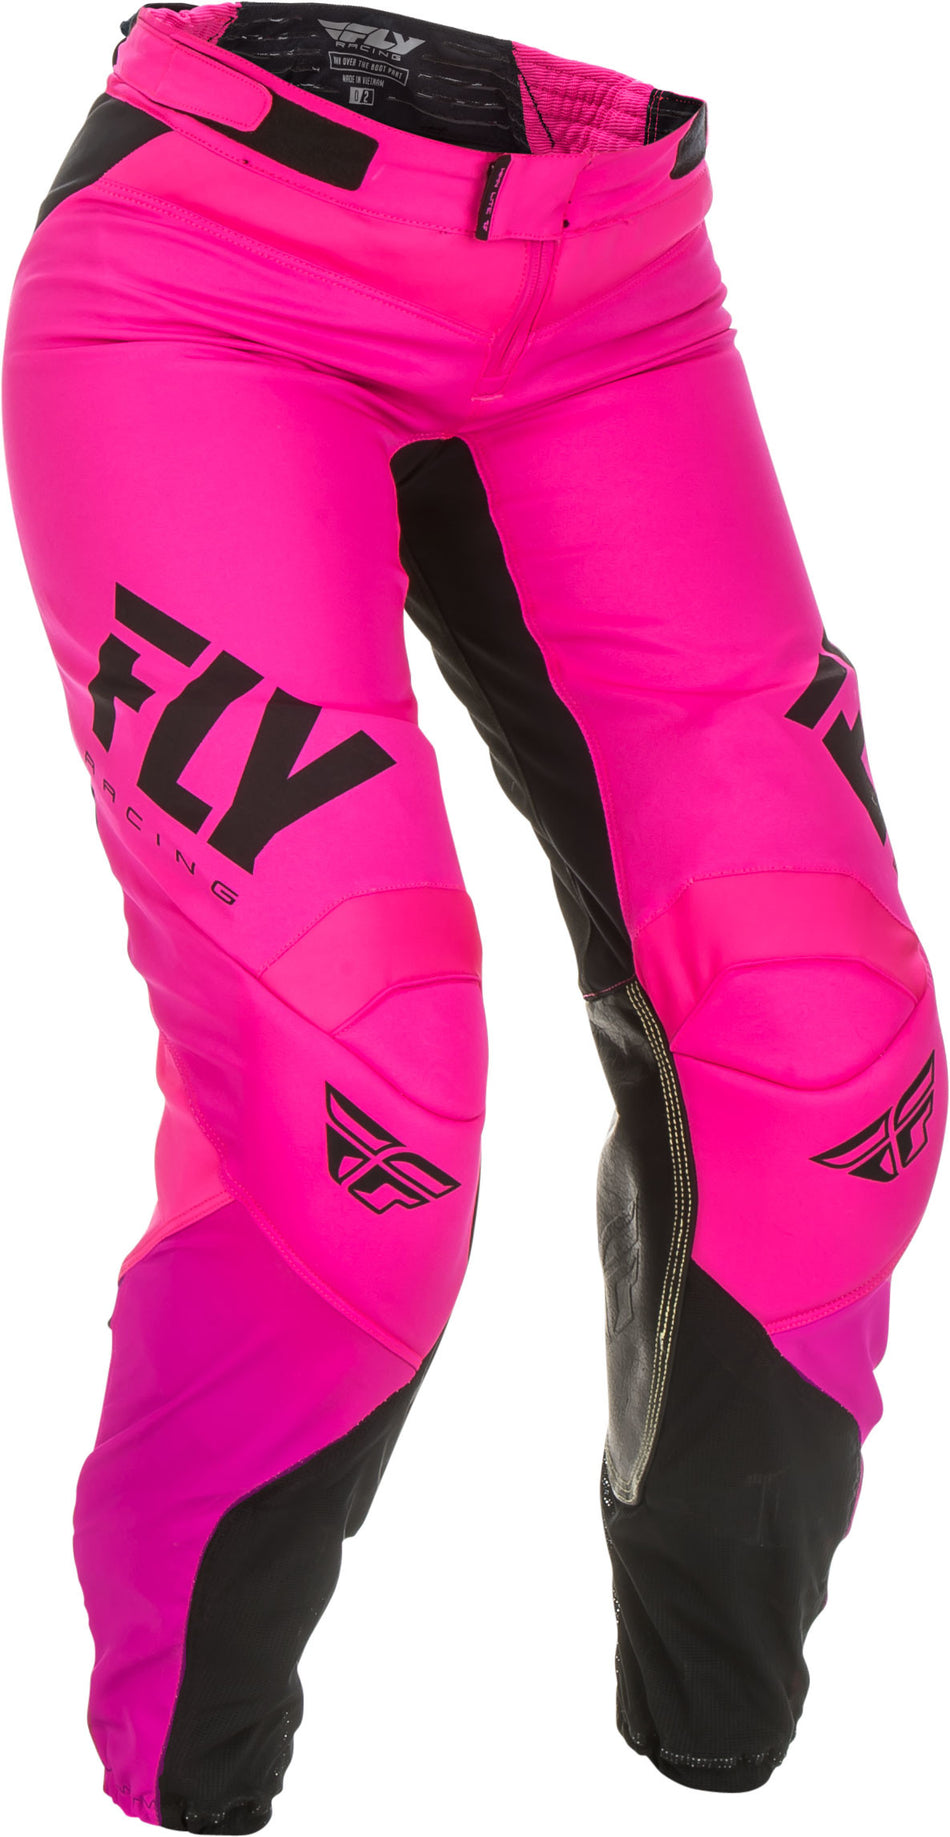 FLY RACING Women's Lite Race Pants Neon Pink/Black Sz 20 191361057892